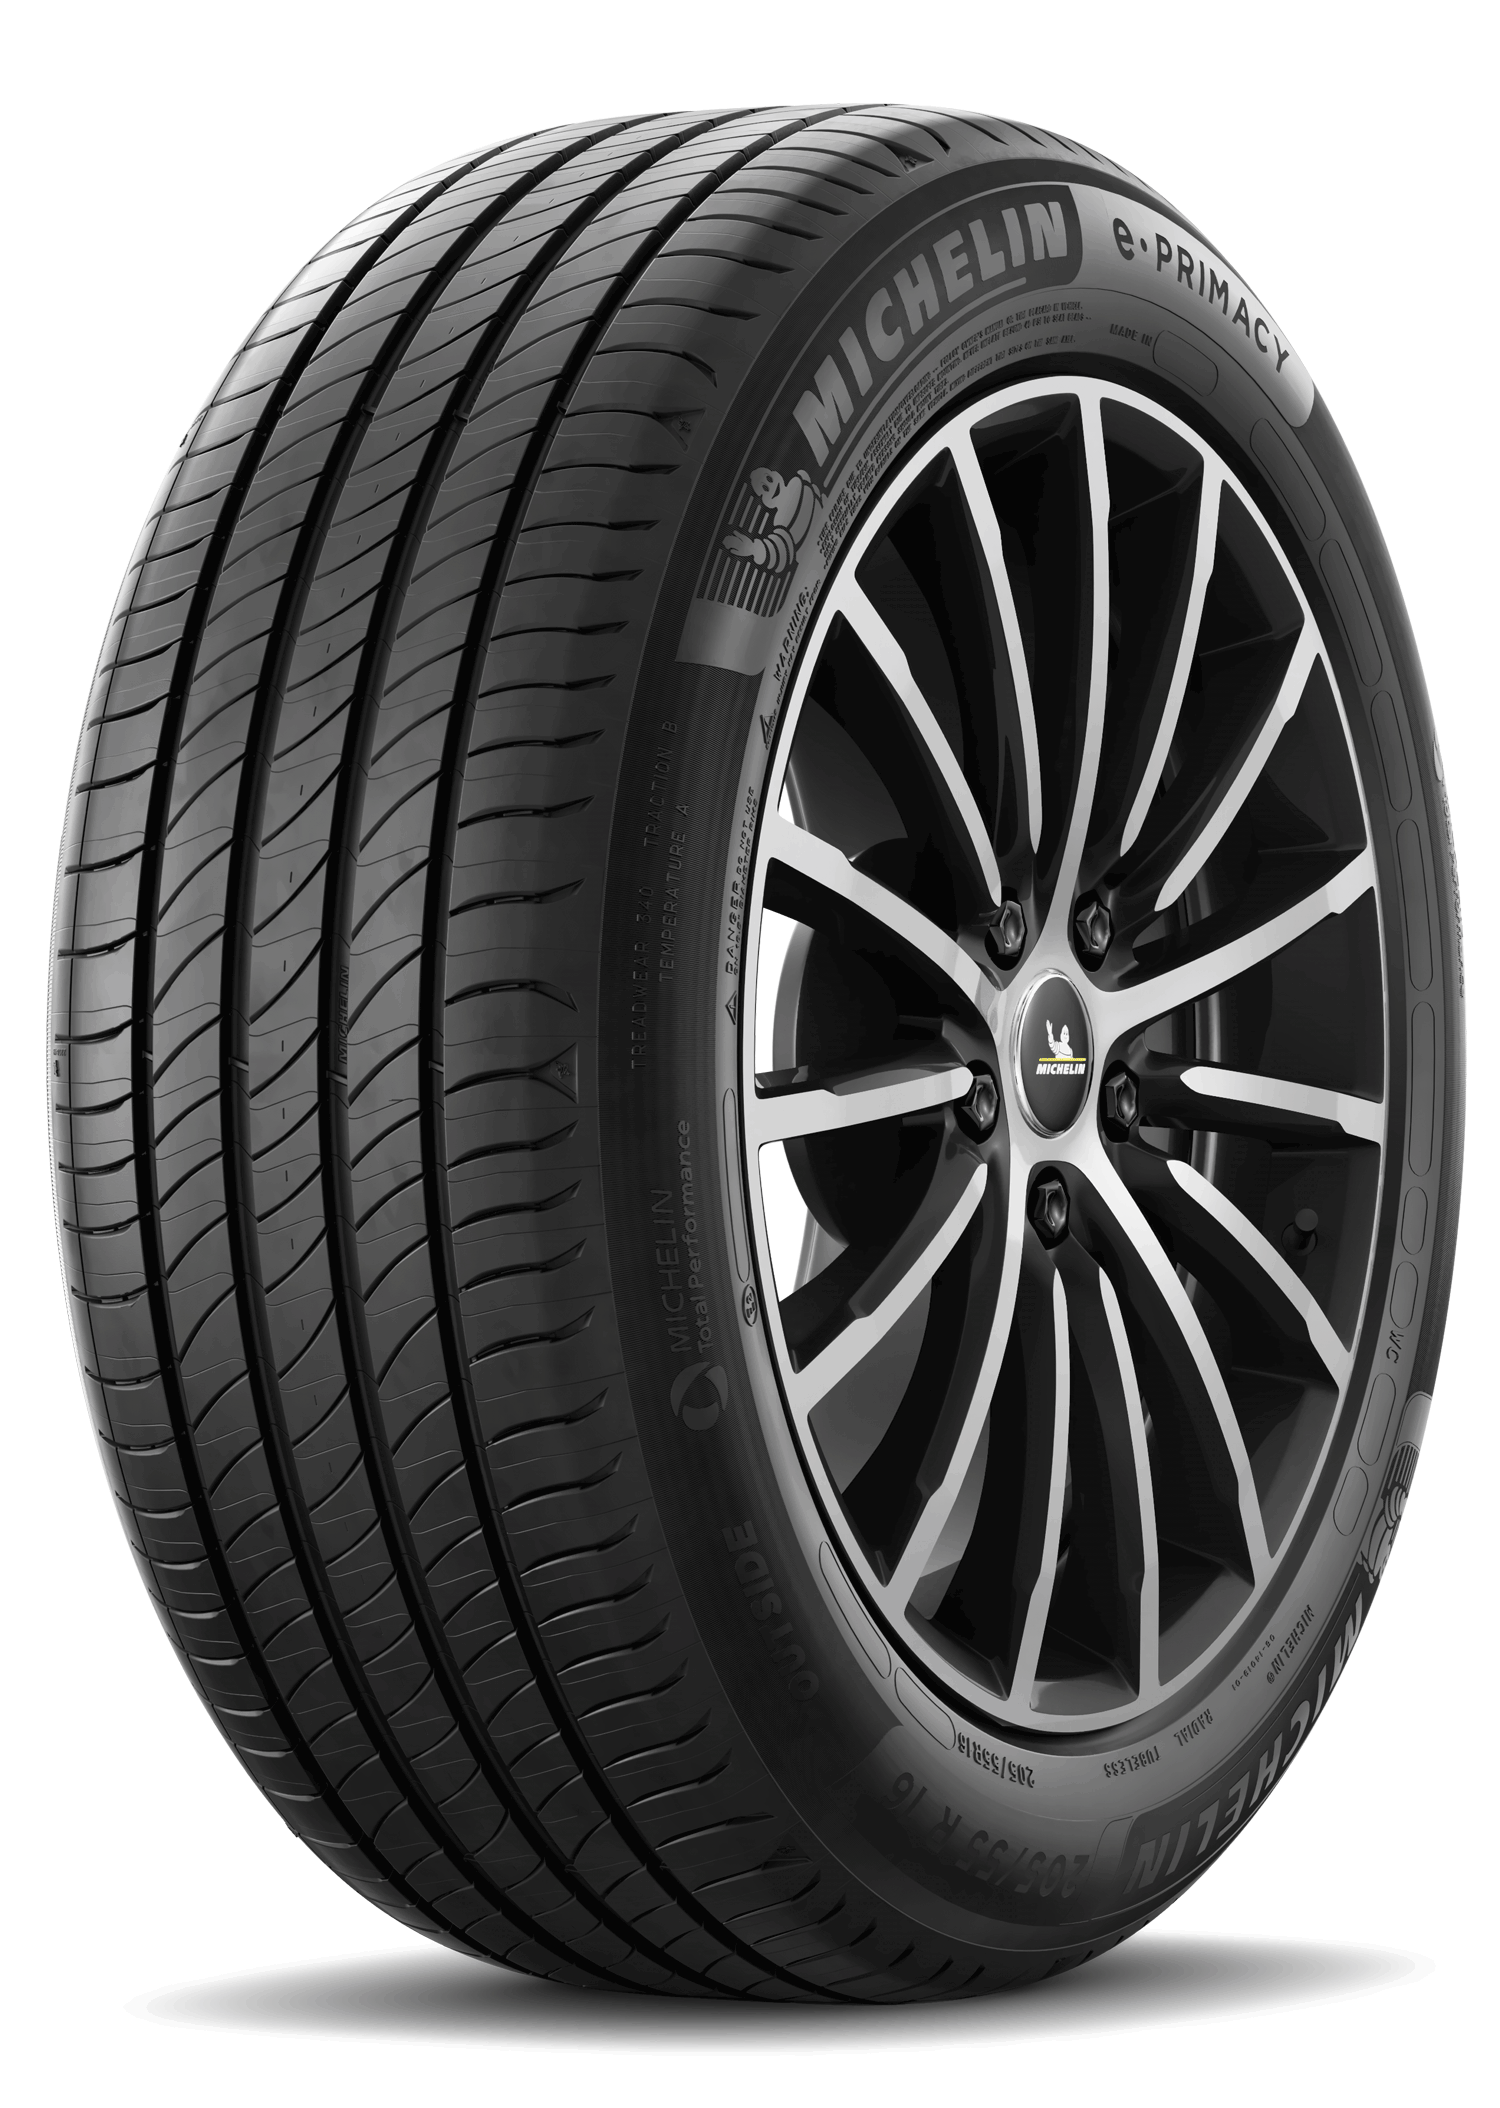 Gomme Nuove Michelin 195/55 R16 91V E PRIMACY XL pneumatici nuovi Estivo